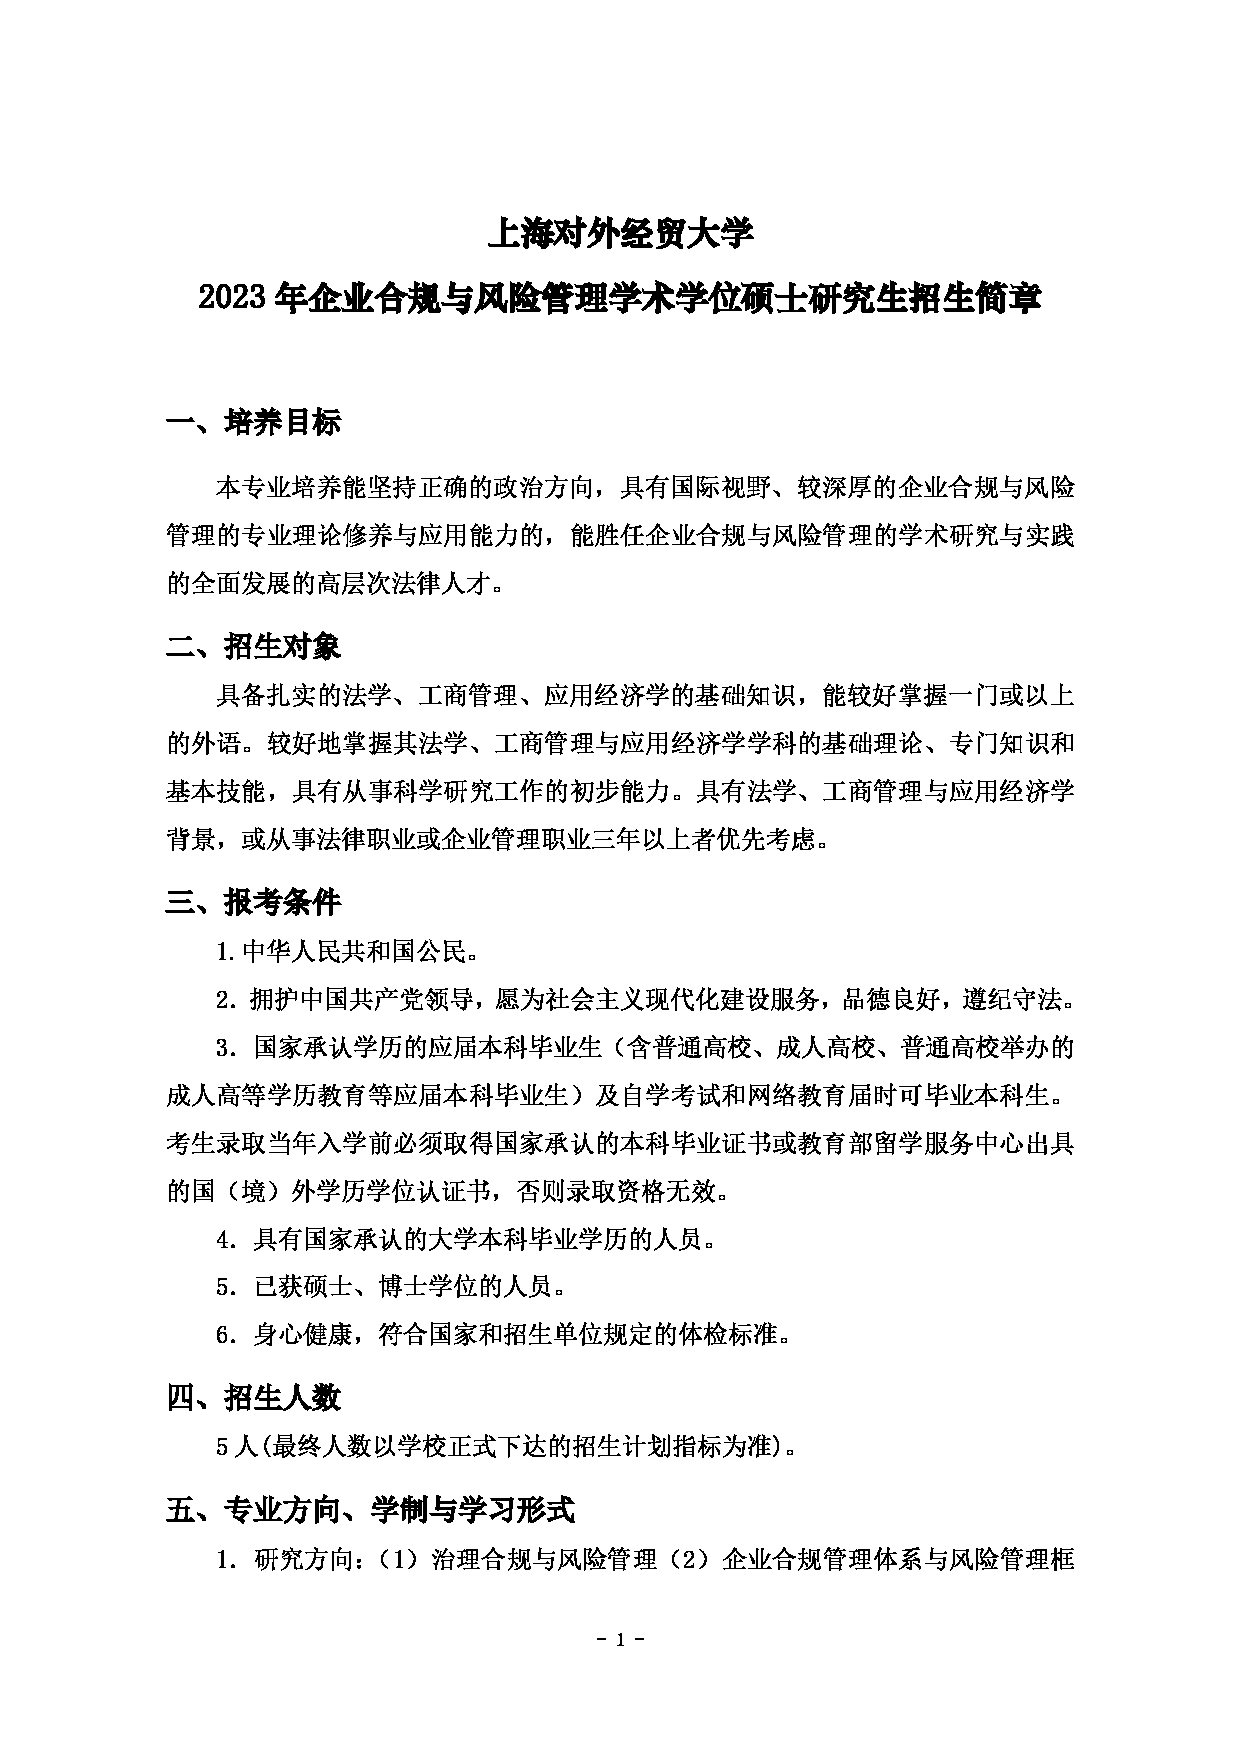 2023招生简章：上海对外经贸大学2023年企业合规与风险管理学术学位硕士研究生招生简章第1页